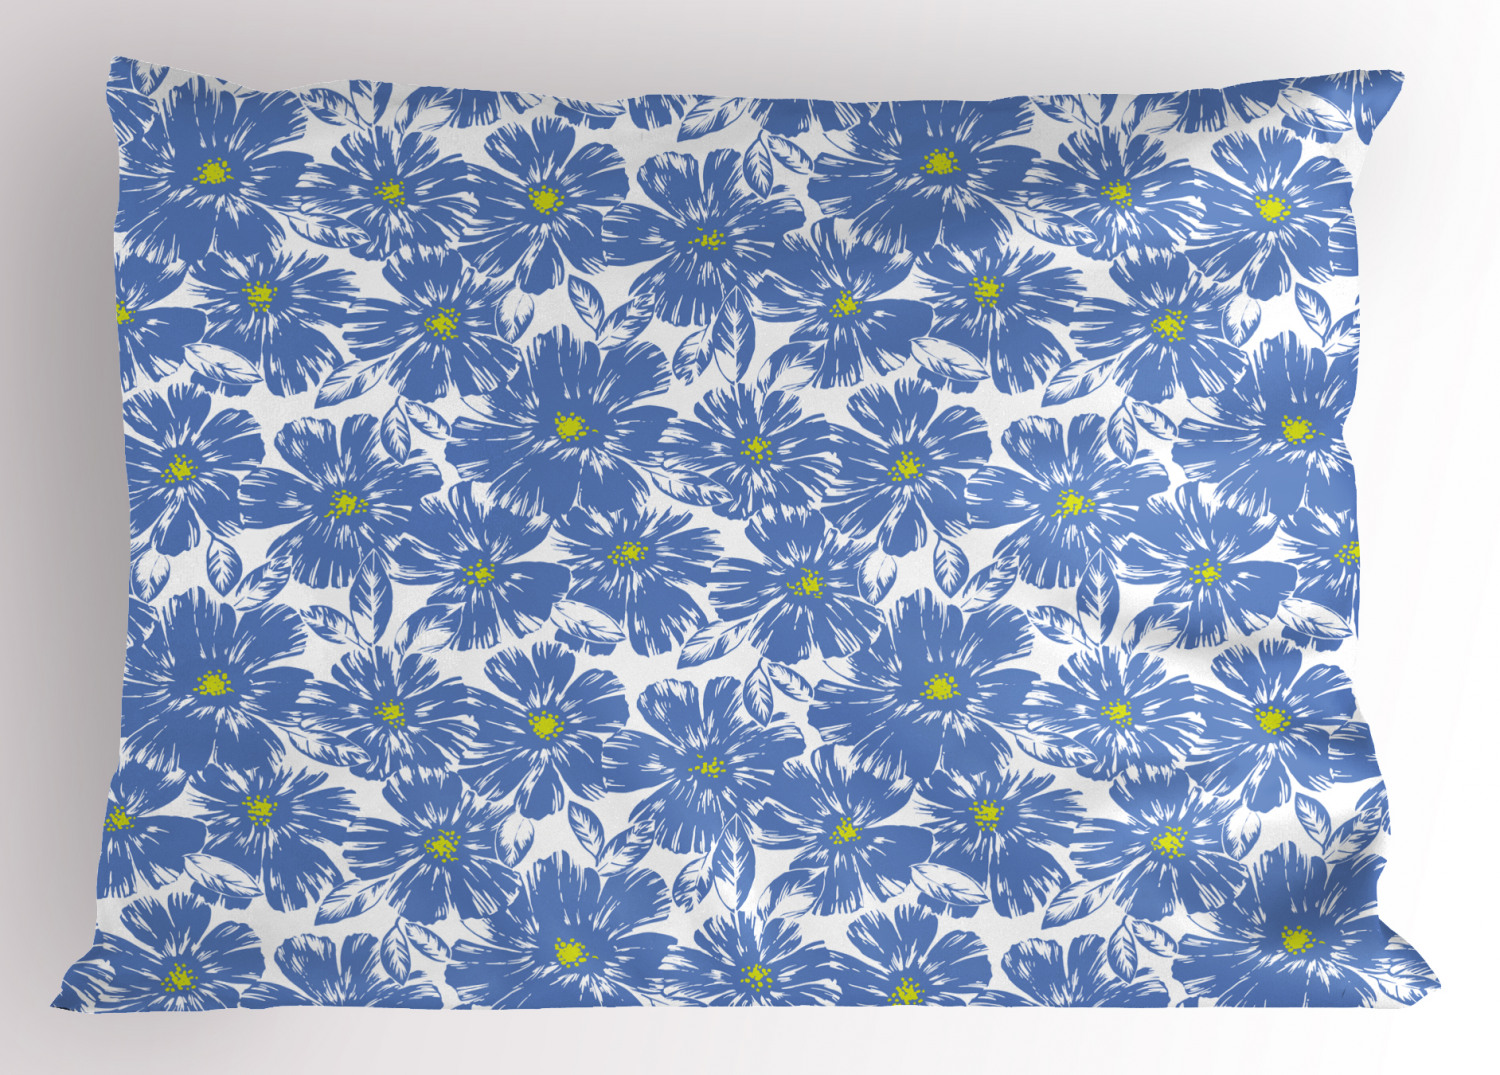 Details about   Vintage Garden Pillow Sham Decorative Pillowcase 3 Sizes Bedroom Decoration